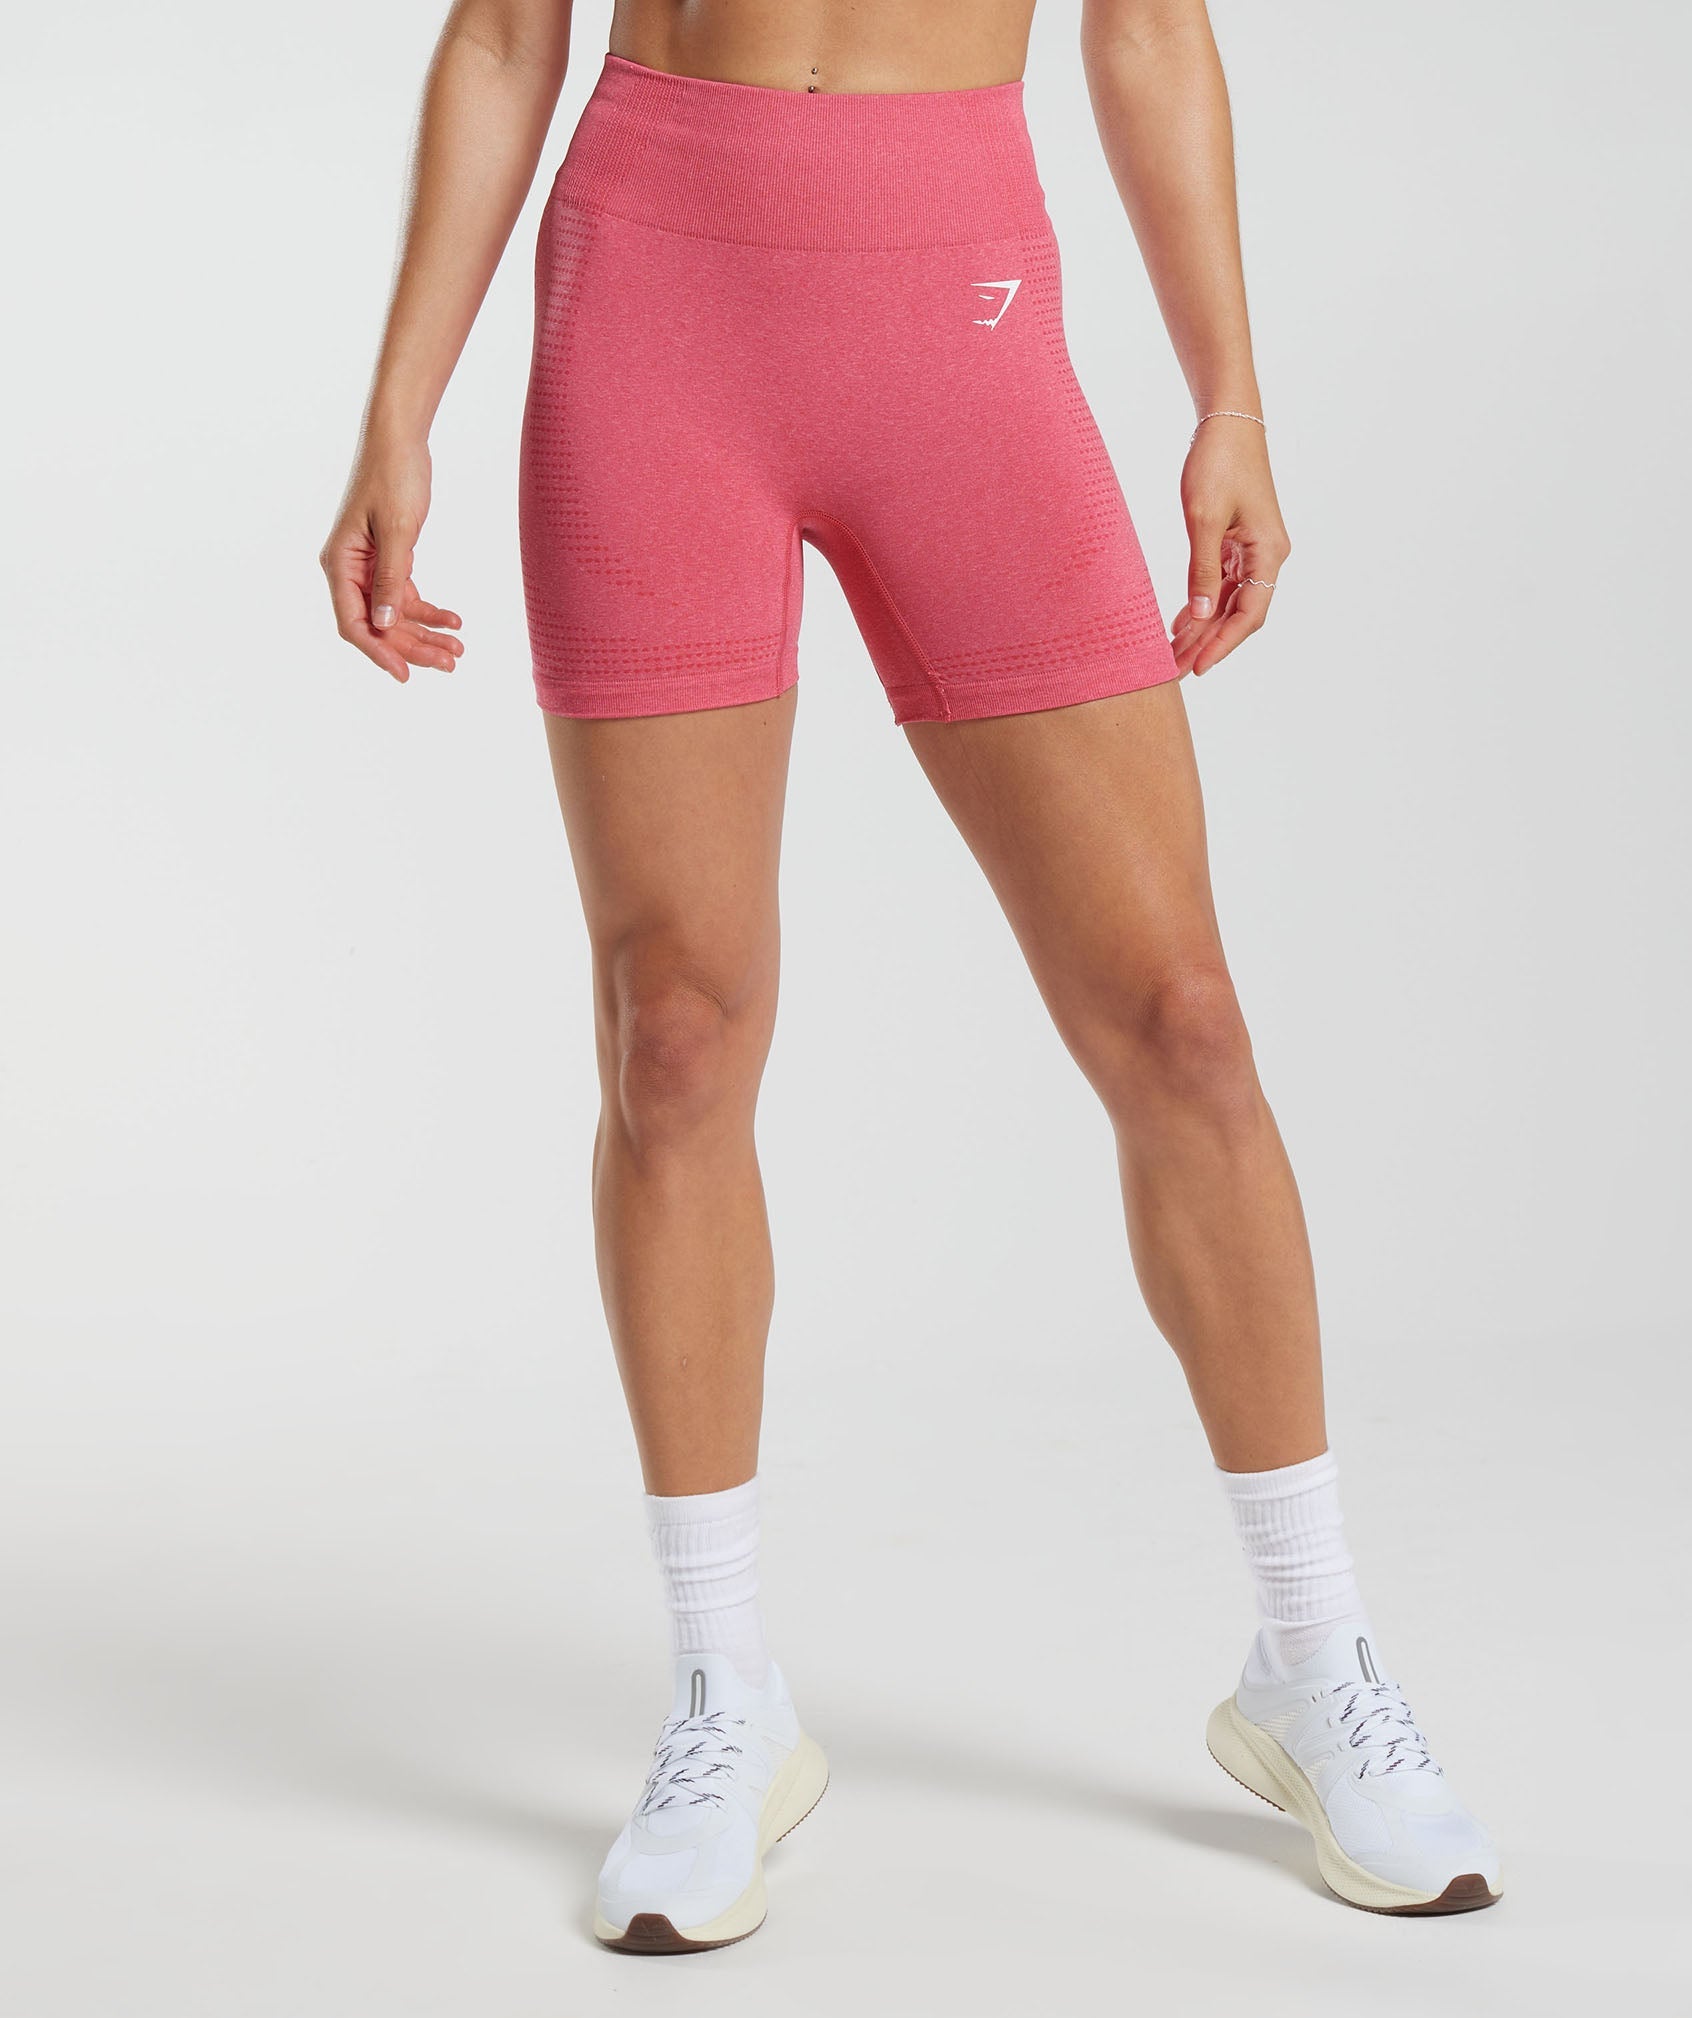 gymshark shorts women xs - Gem